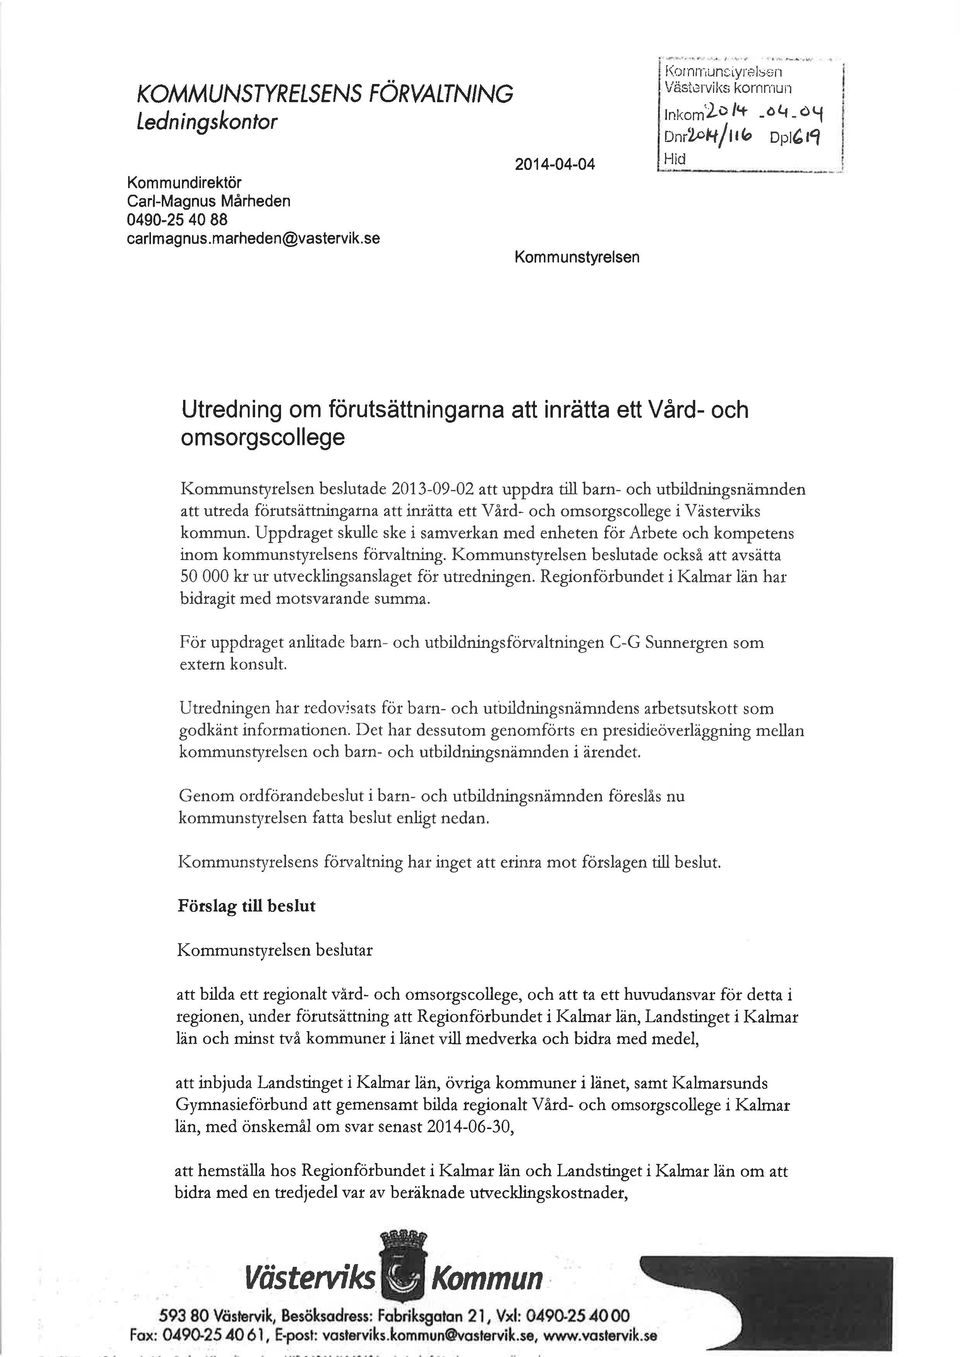 I(ommunstyrelsen beslutade 2013-09-02 att uppdra till barn- och utbildningsnämnden att utreda förutsättning rî^ ^ttimàtta ett Våtd- och omsorgscollege i Västerviks kommun.